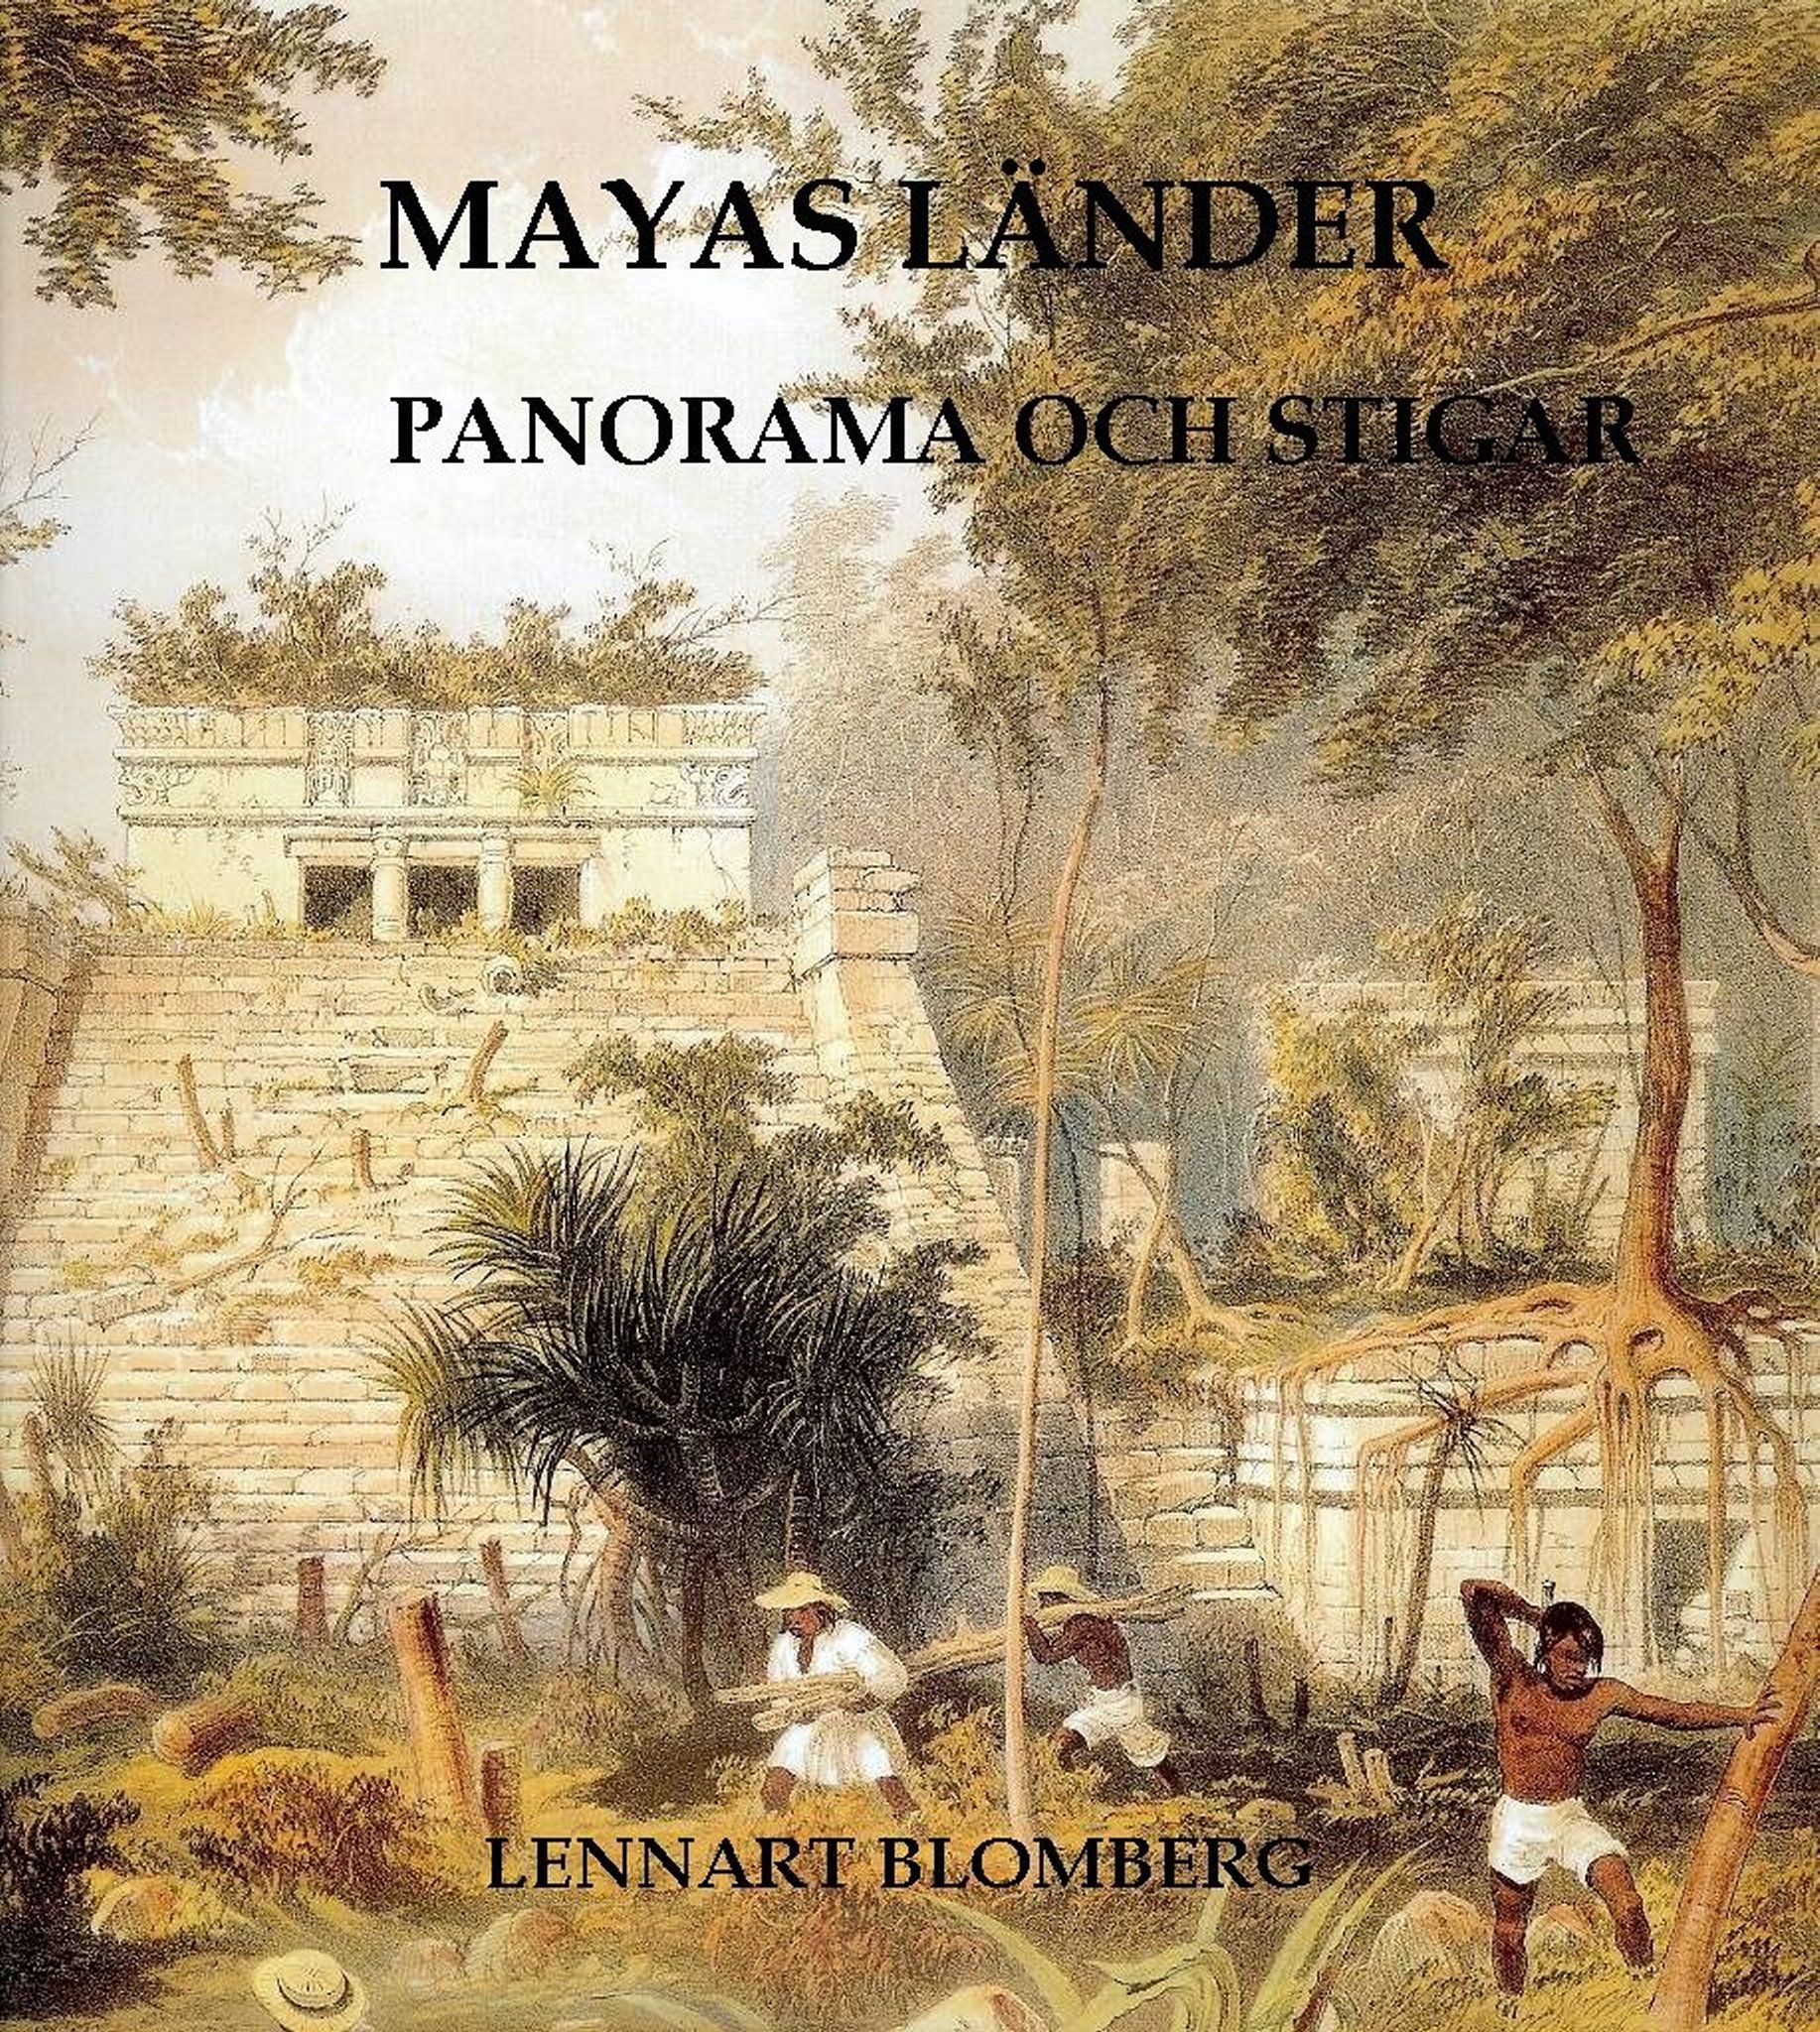 Mayas länder. Panorama och stigar, e-bok av Lennart Blomberg